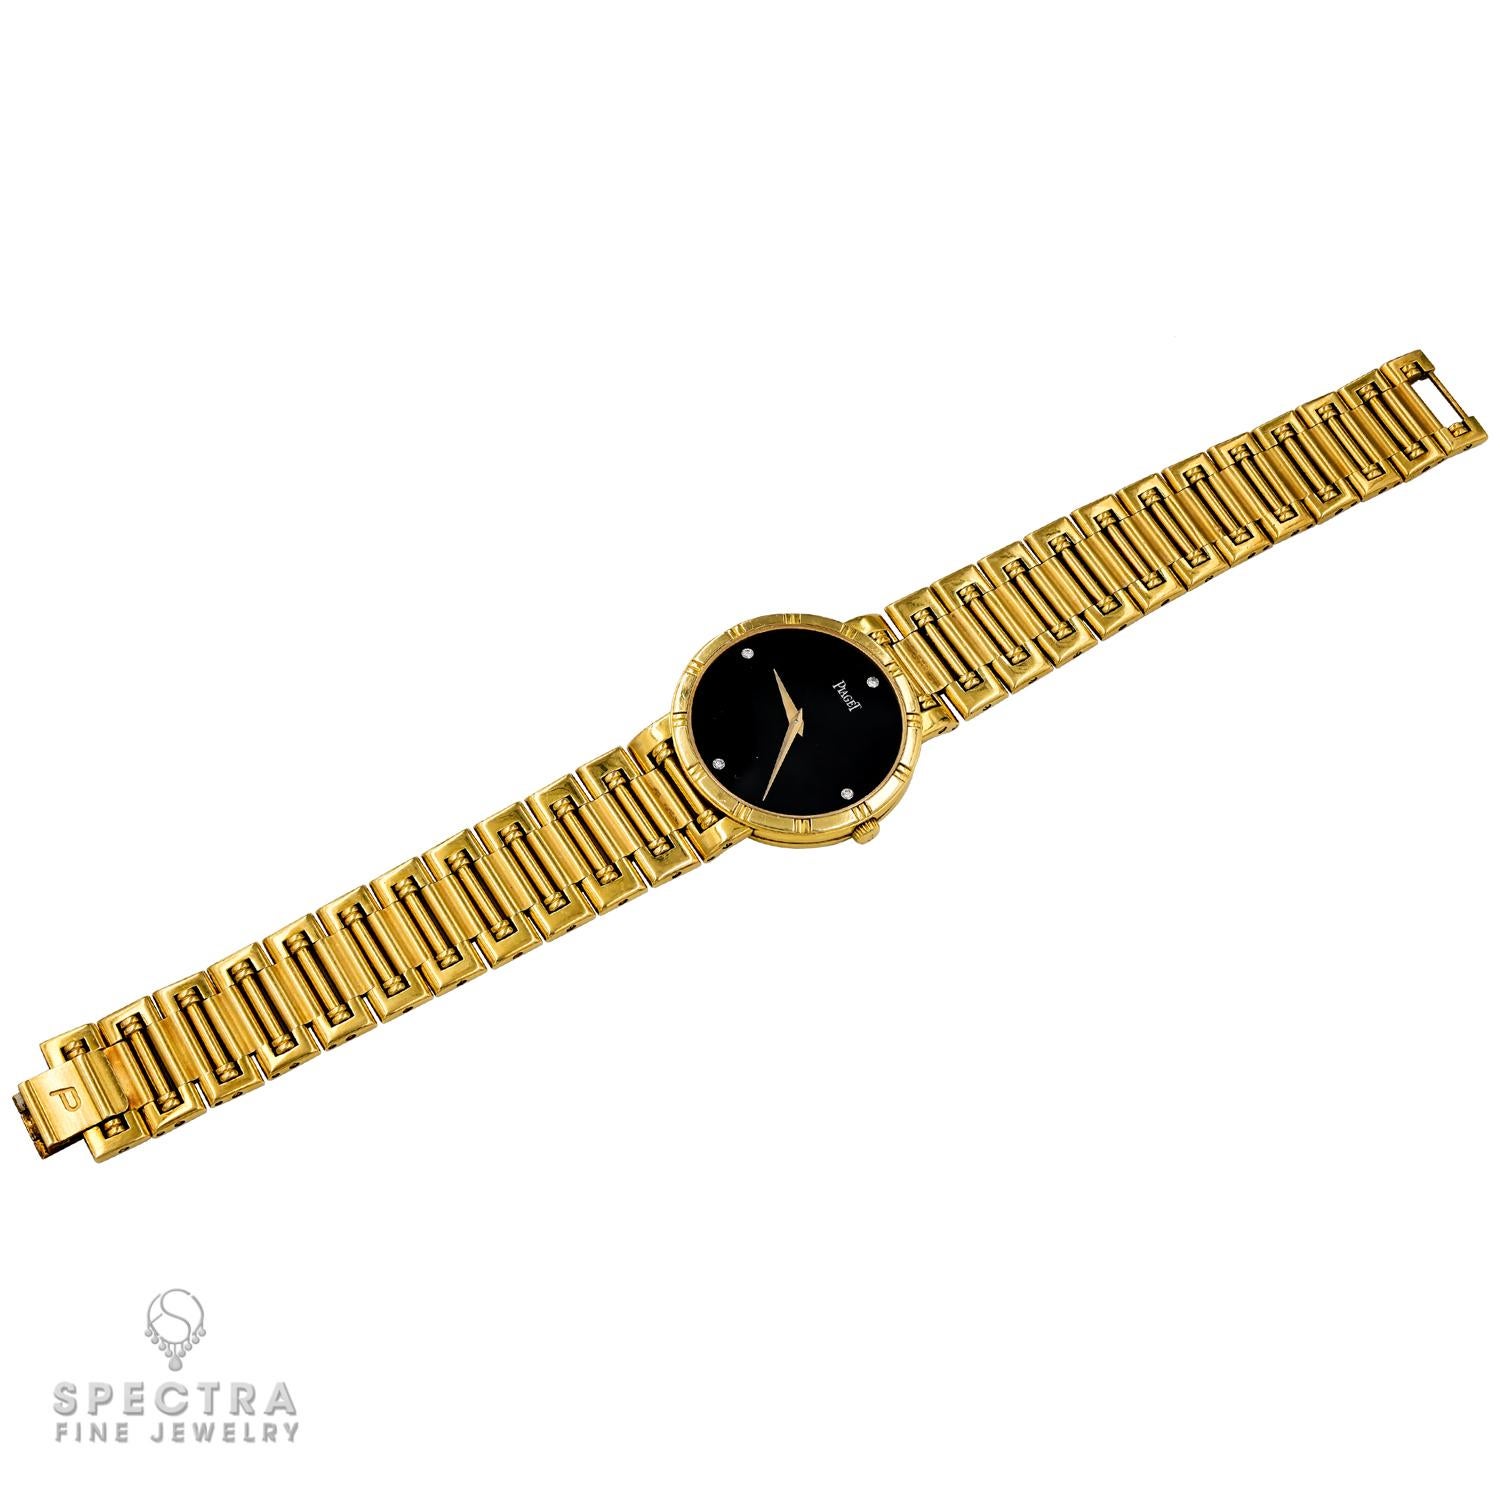 Die Piaget Dancer Diamond Onyx Dial Ladies' Watch ist eine zeitlos elegante Damenuhr. Dieser exquisite Zeitmesser aus strahlendem 18-karätigem Gelbgold strahlt aus jedem Blickwinkel Luxus aus.

Das markante Zifferblatt aus schwarzem Onyx dient als